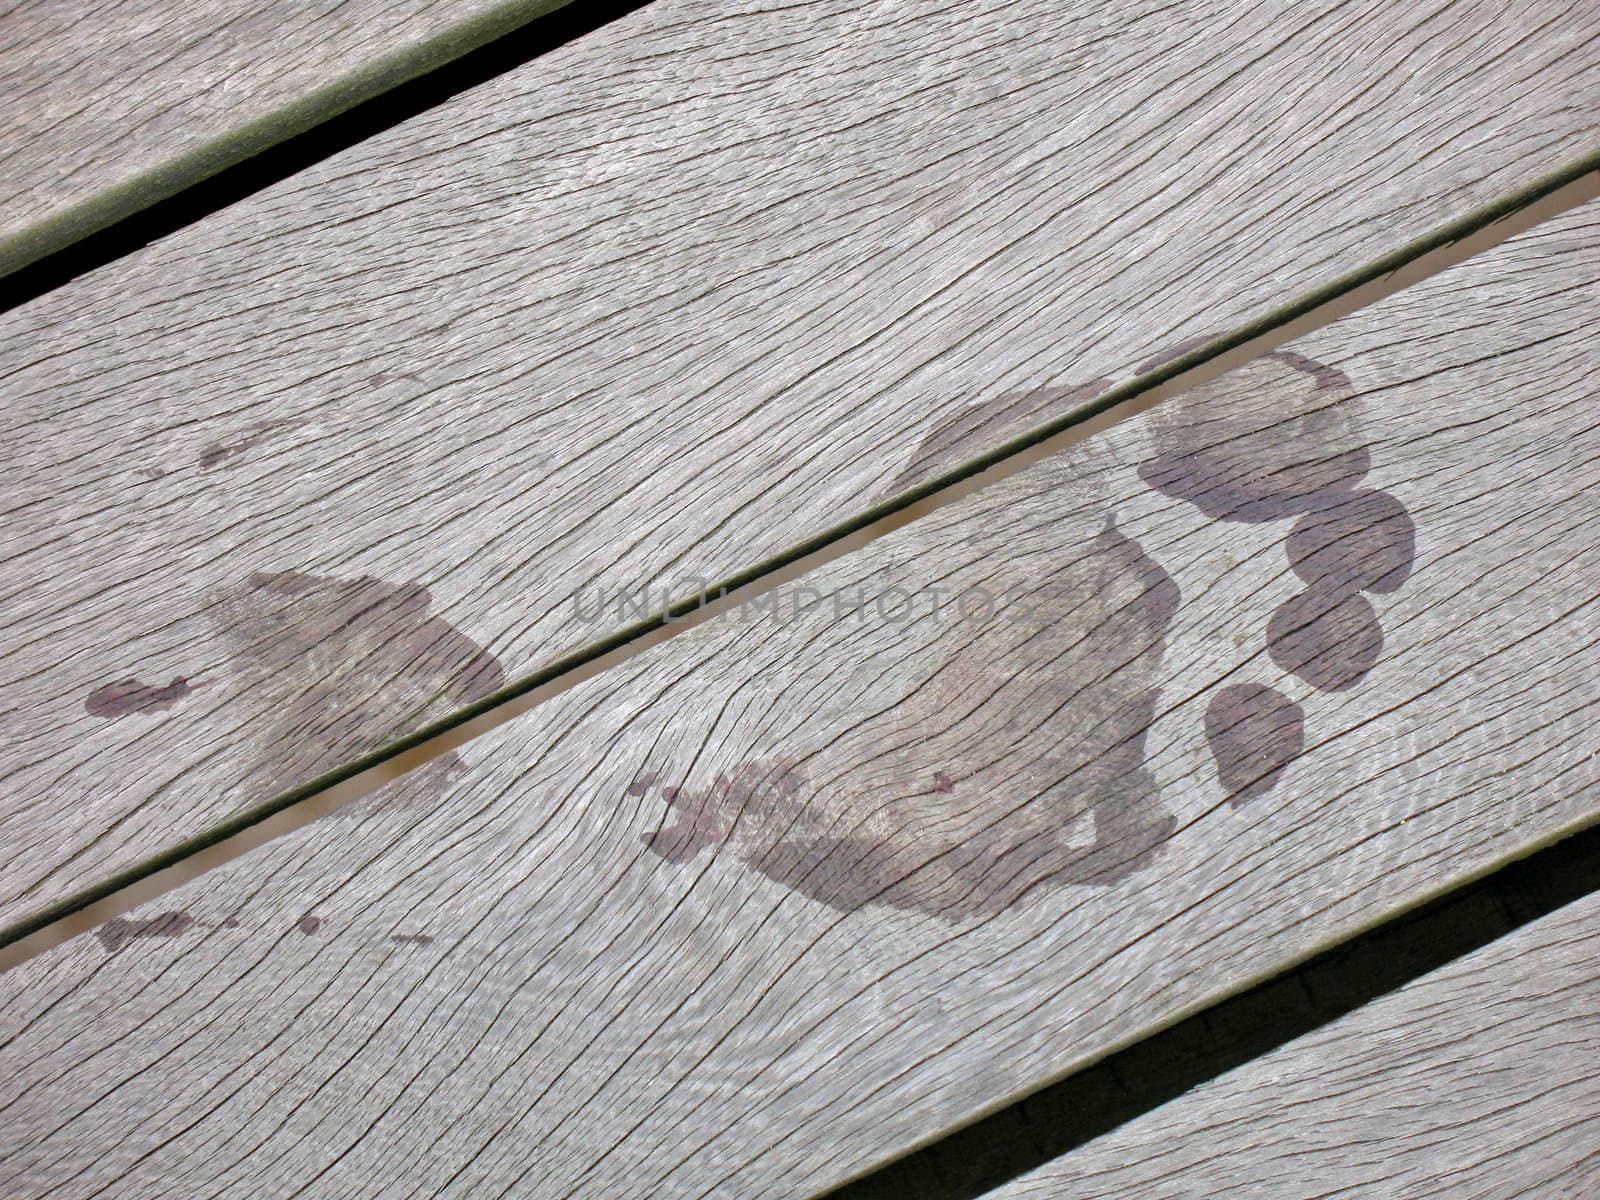 Wet Footprint on Wooden Boards of Pier in UK